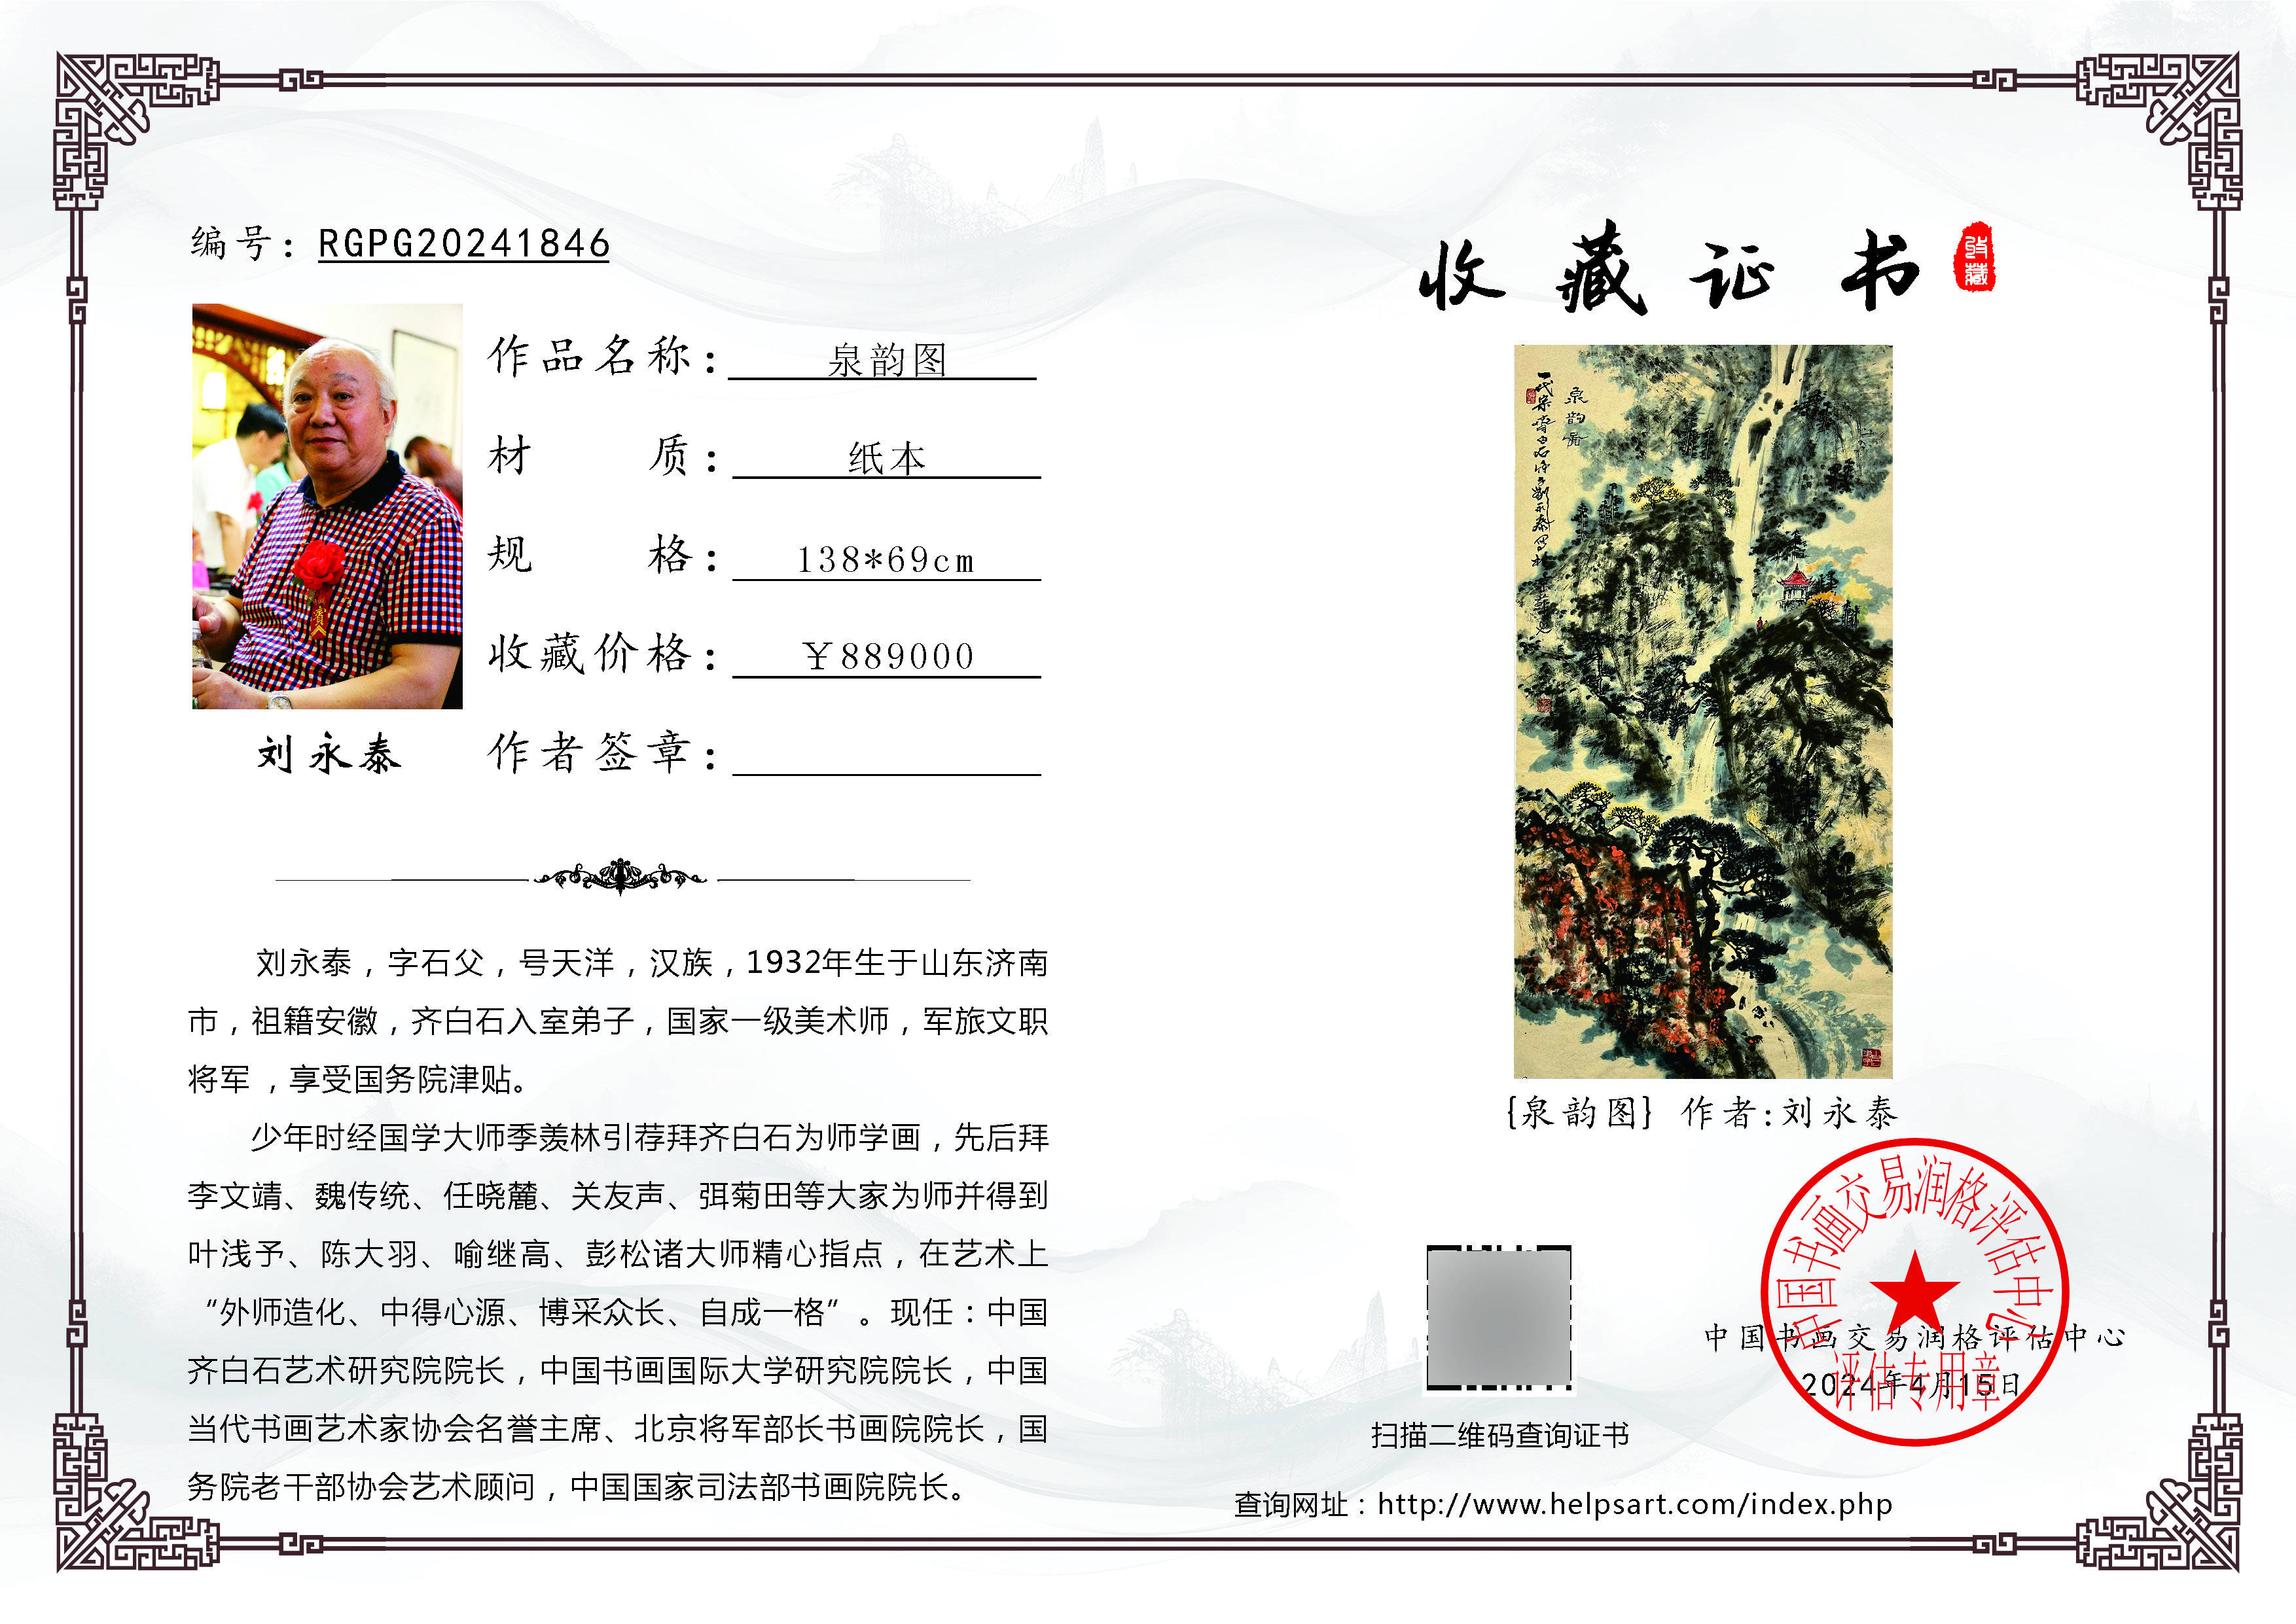 刘永泰作品《泉韵图》收藏于中国书画交易润格评估中心